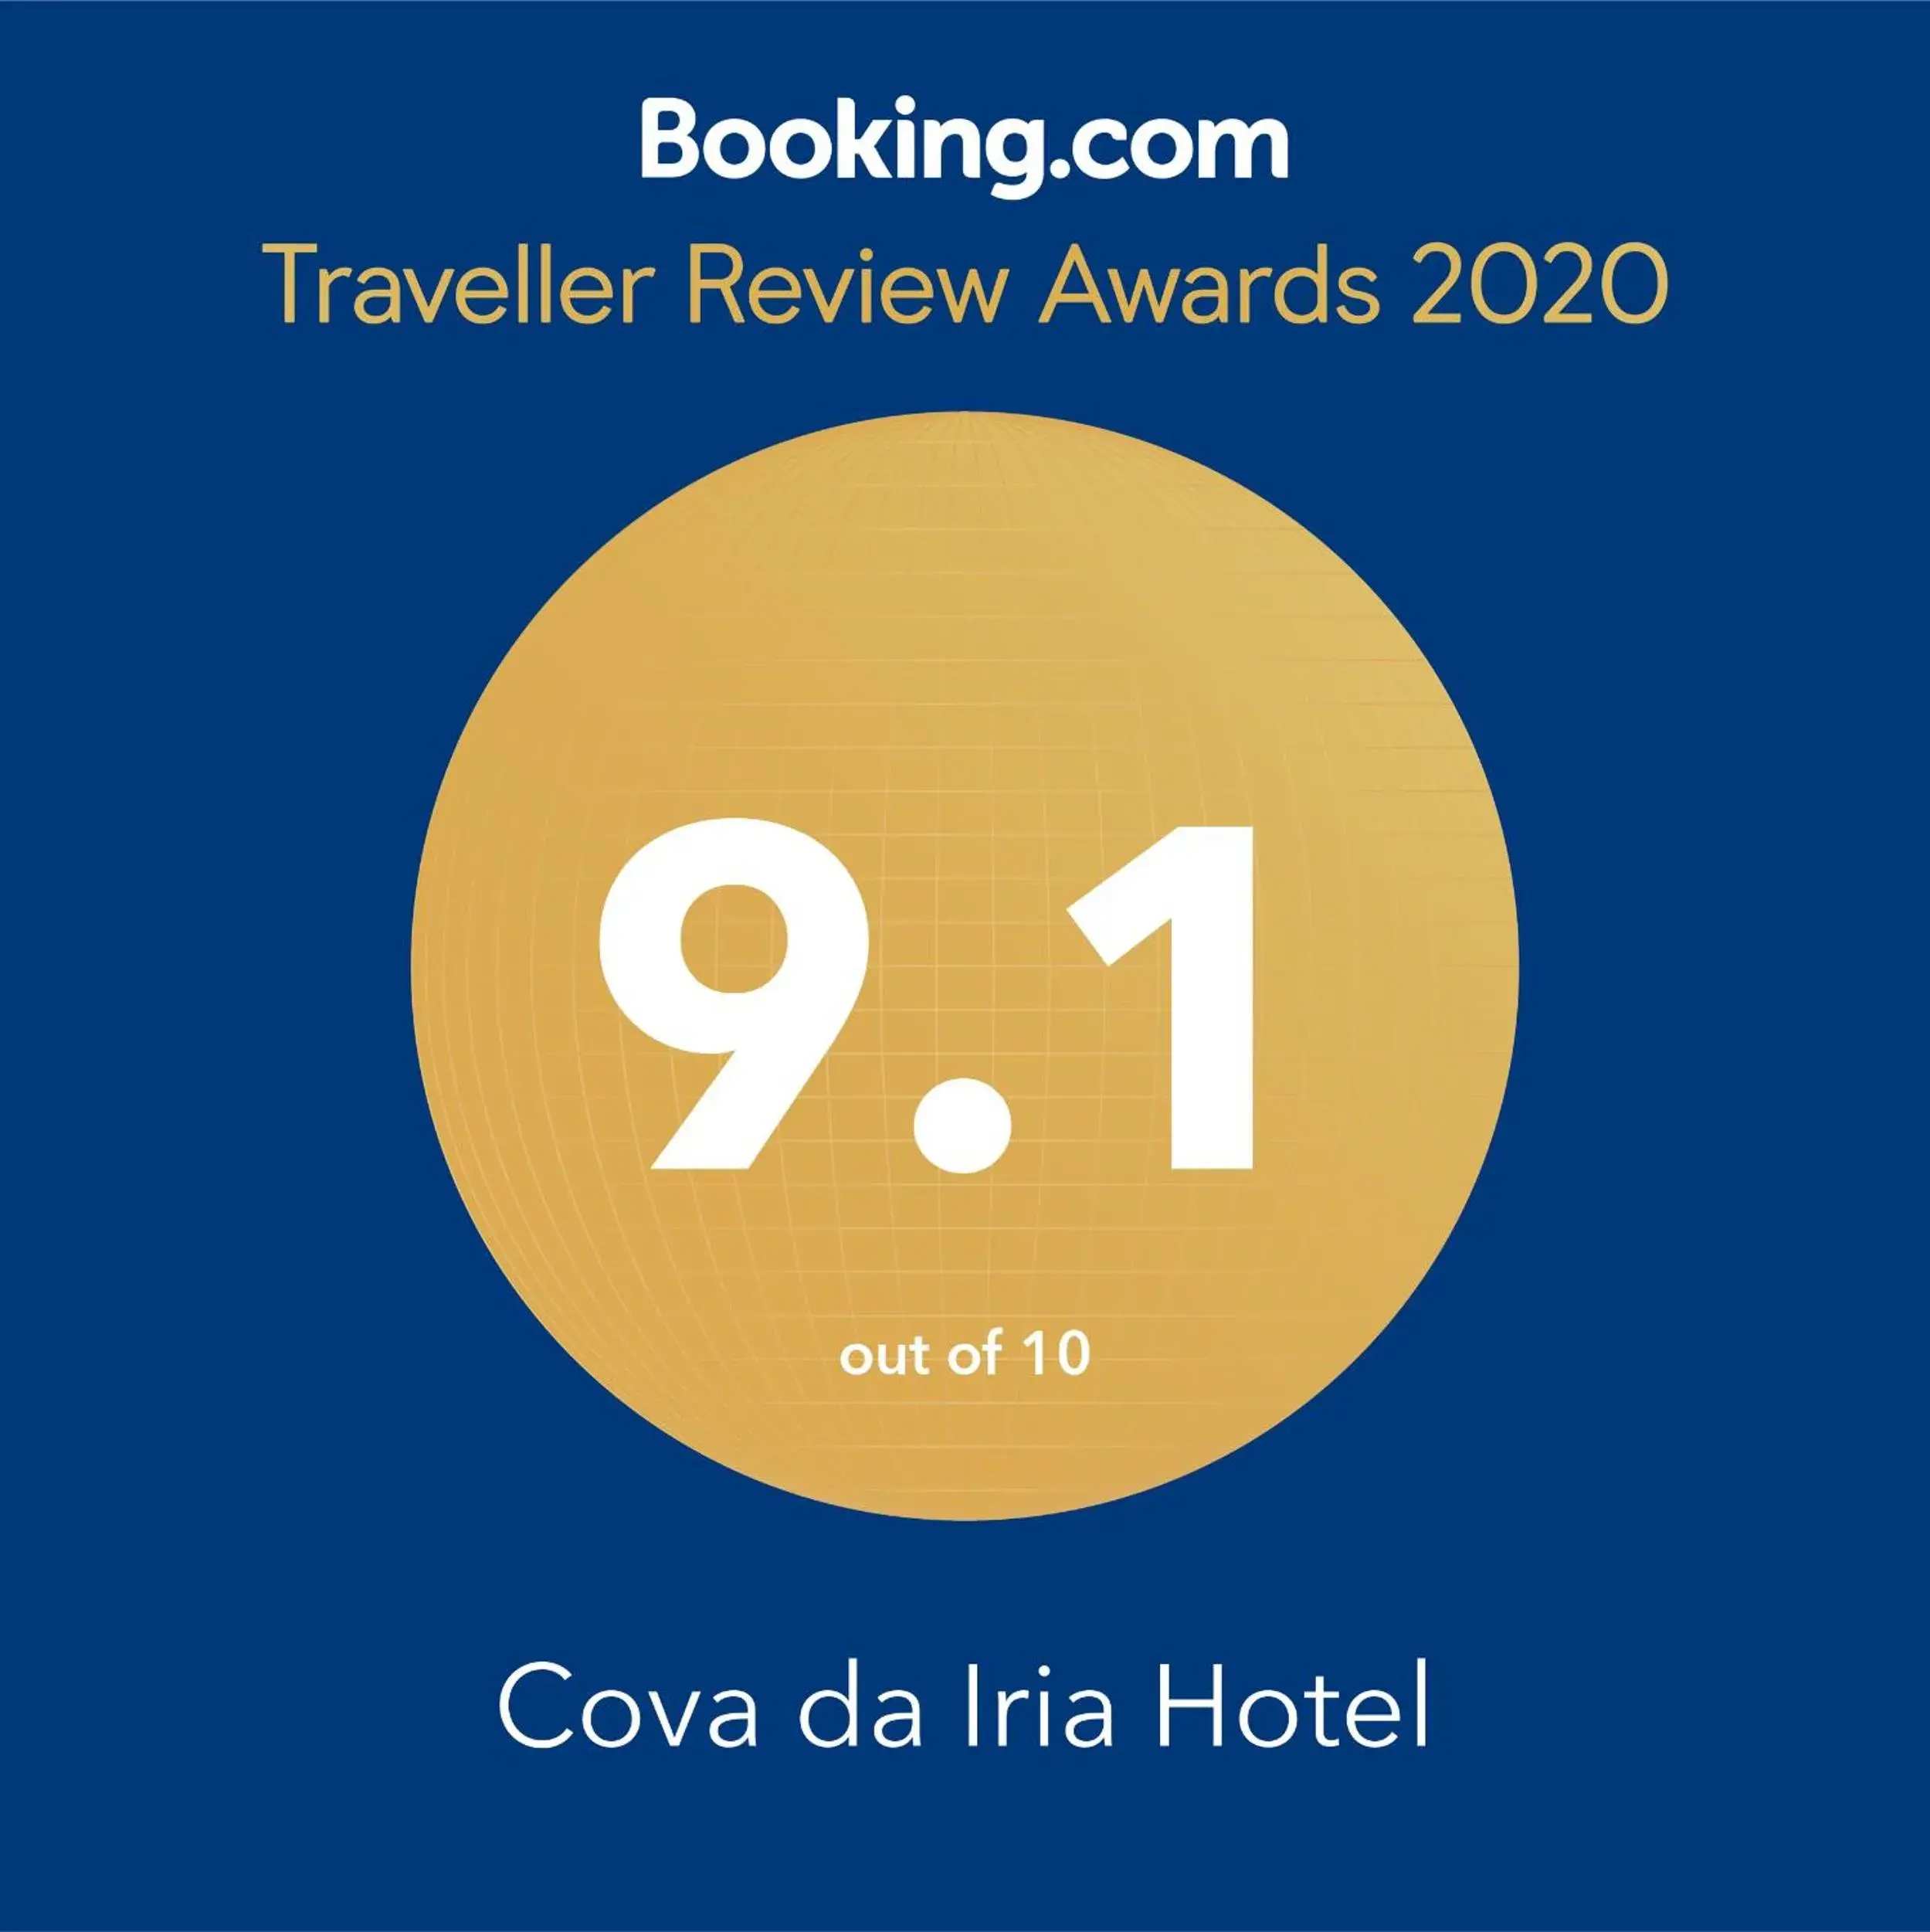 Certificate/Award in Cova da Iria Hotel